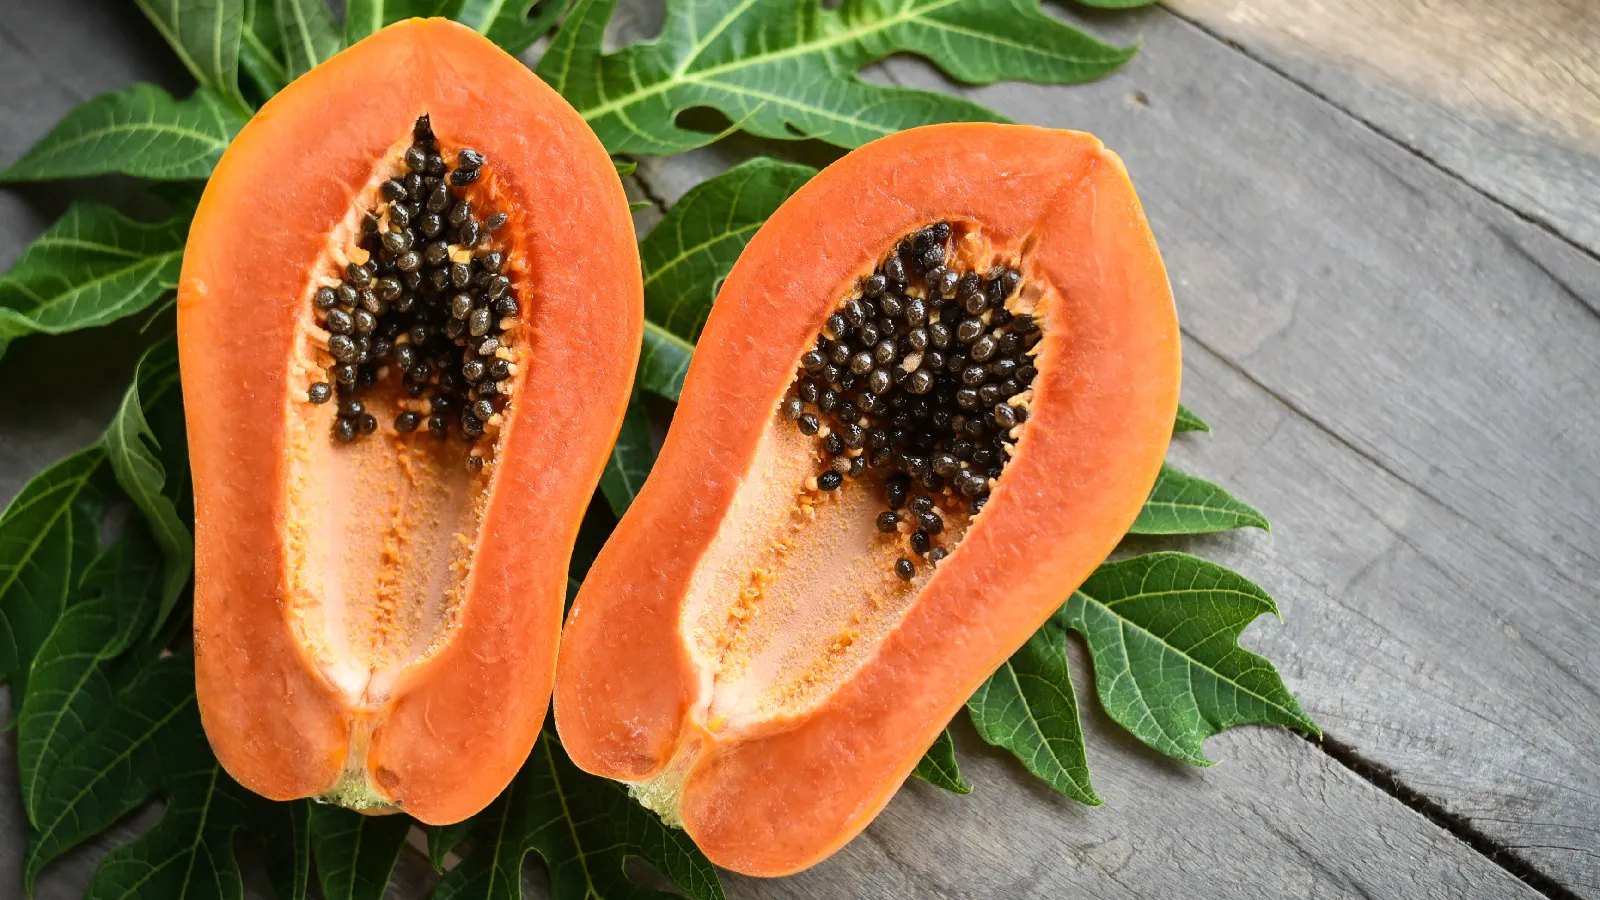 Papaya Side Effects in Hindi, Green Papaya Benefits and Side Effects, Papaya Seeds Side Effects, Papaya On Face Side Effects, Papaya leaf Juice Side Effects, Papaya Side Effects